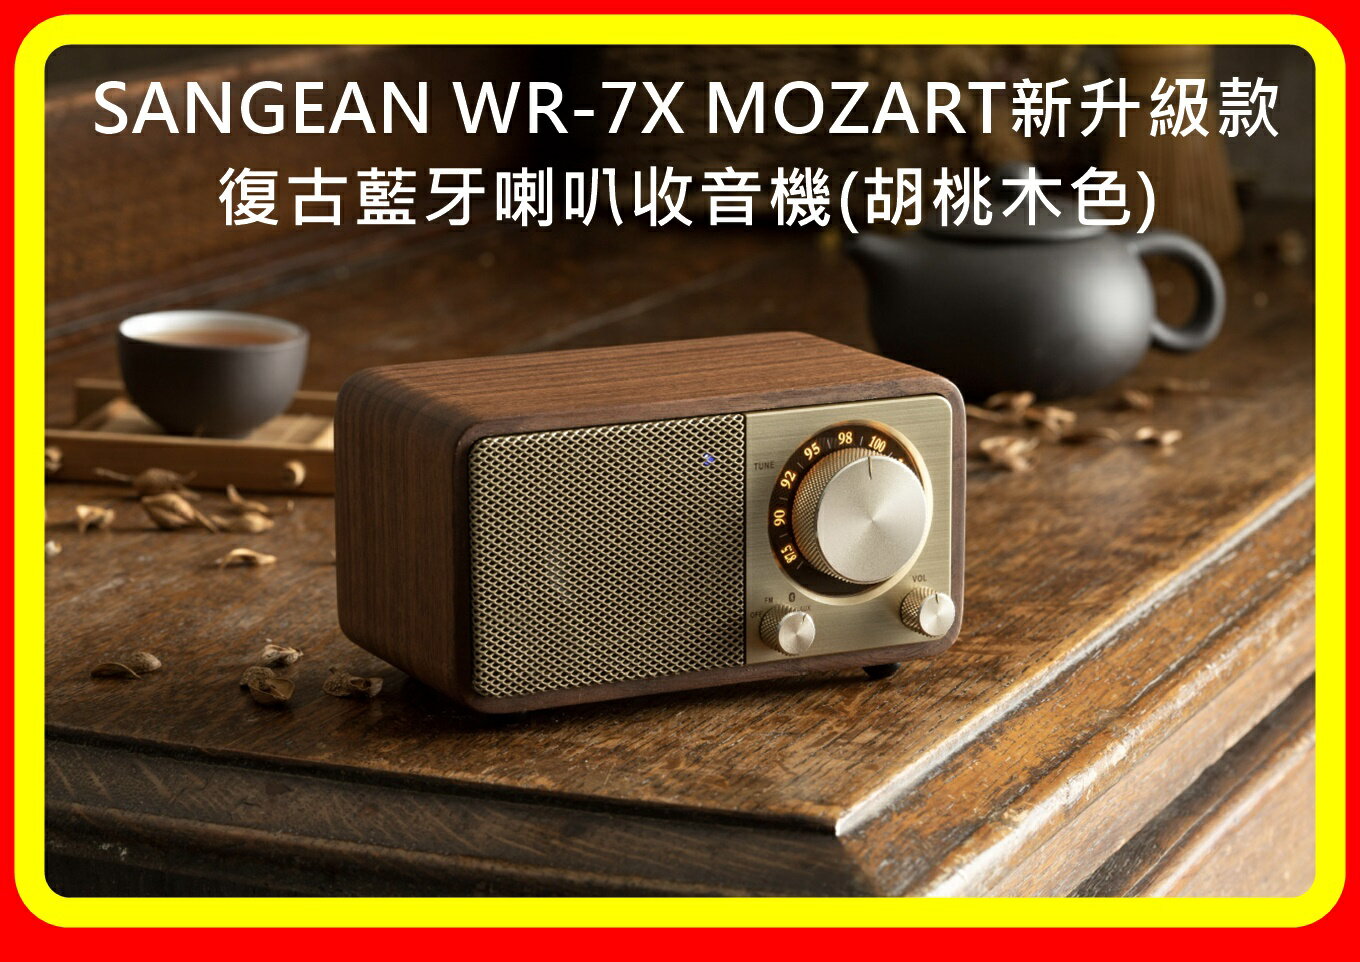 【現貨】SANGEAN WR-7X MOZART新升級款 復古藍牙喇叭收音機(胡桃木色)